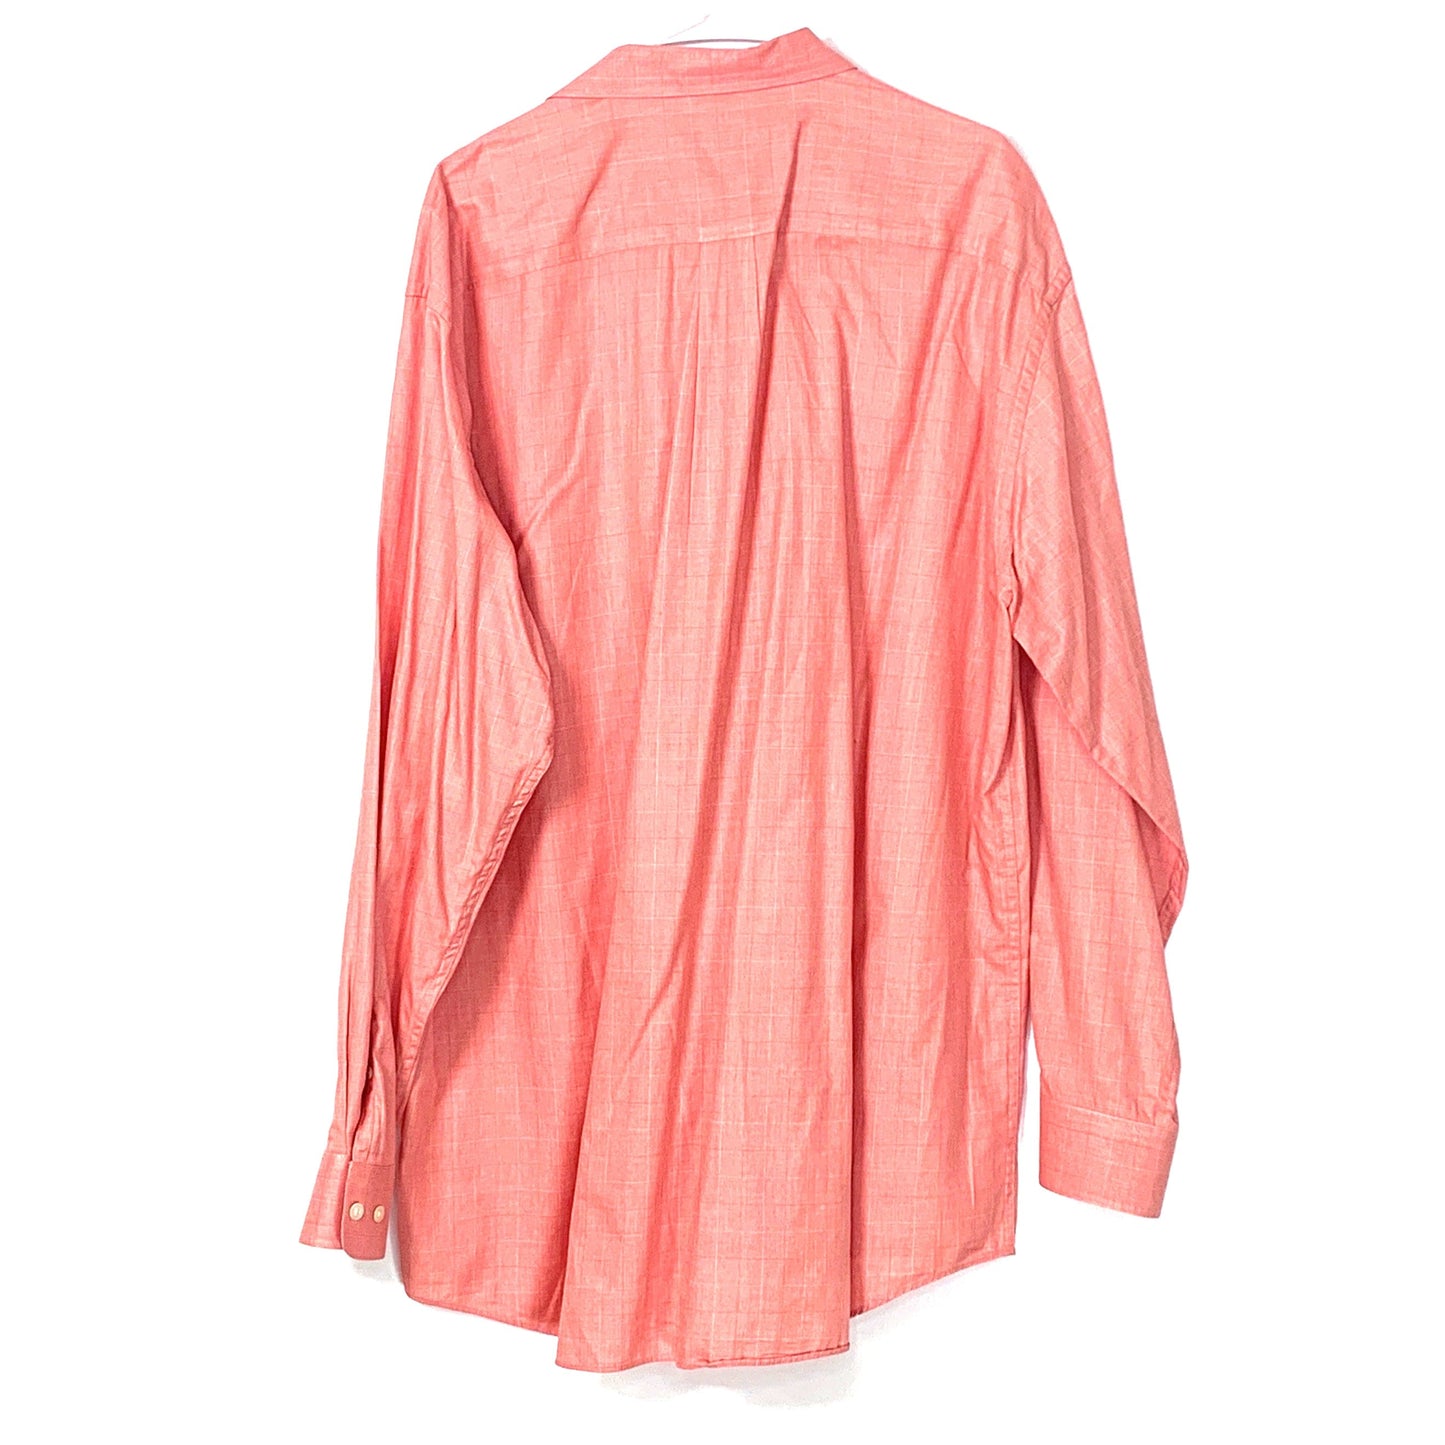 Ashworth Golf Mens XL Pink Check Dress Shirt Button Up Long Sleeve